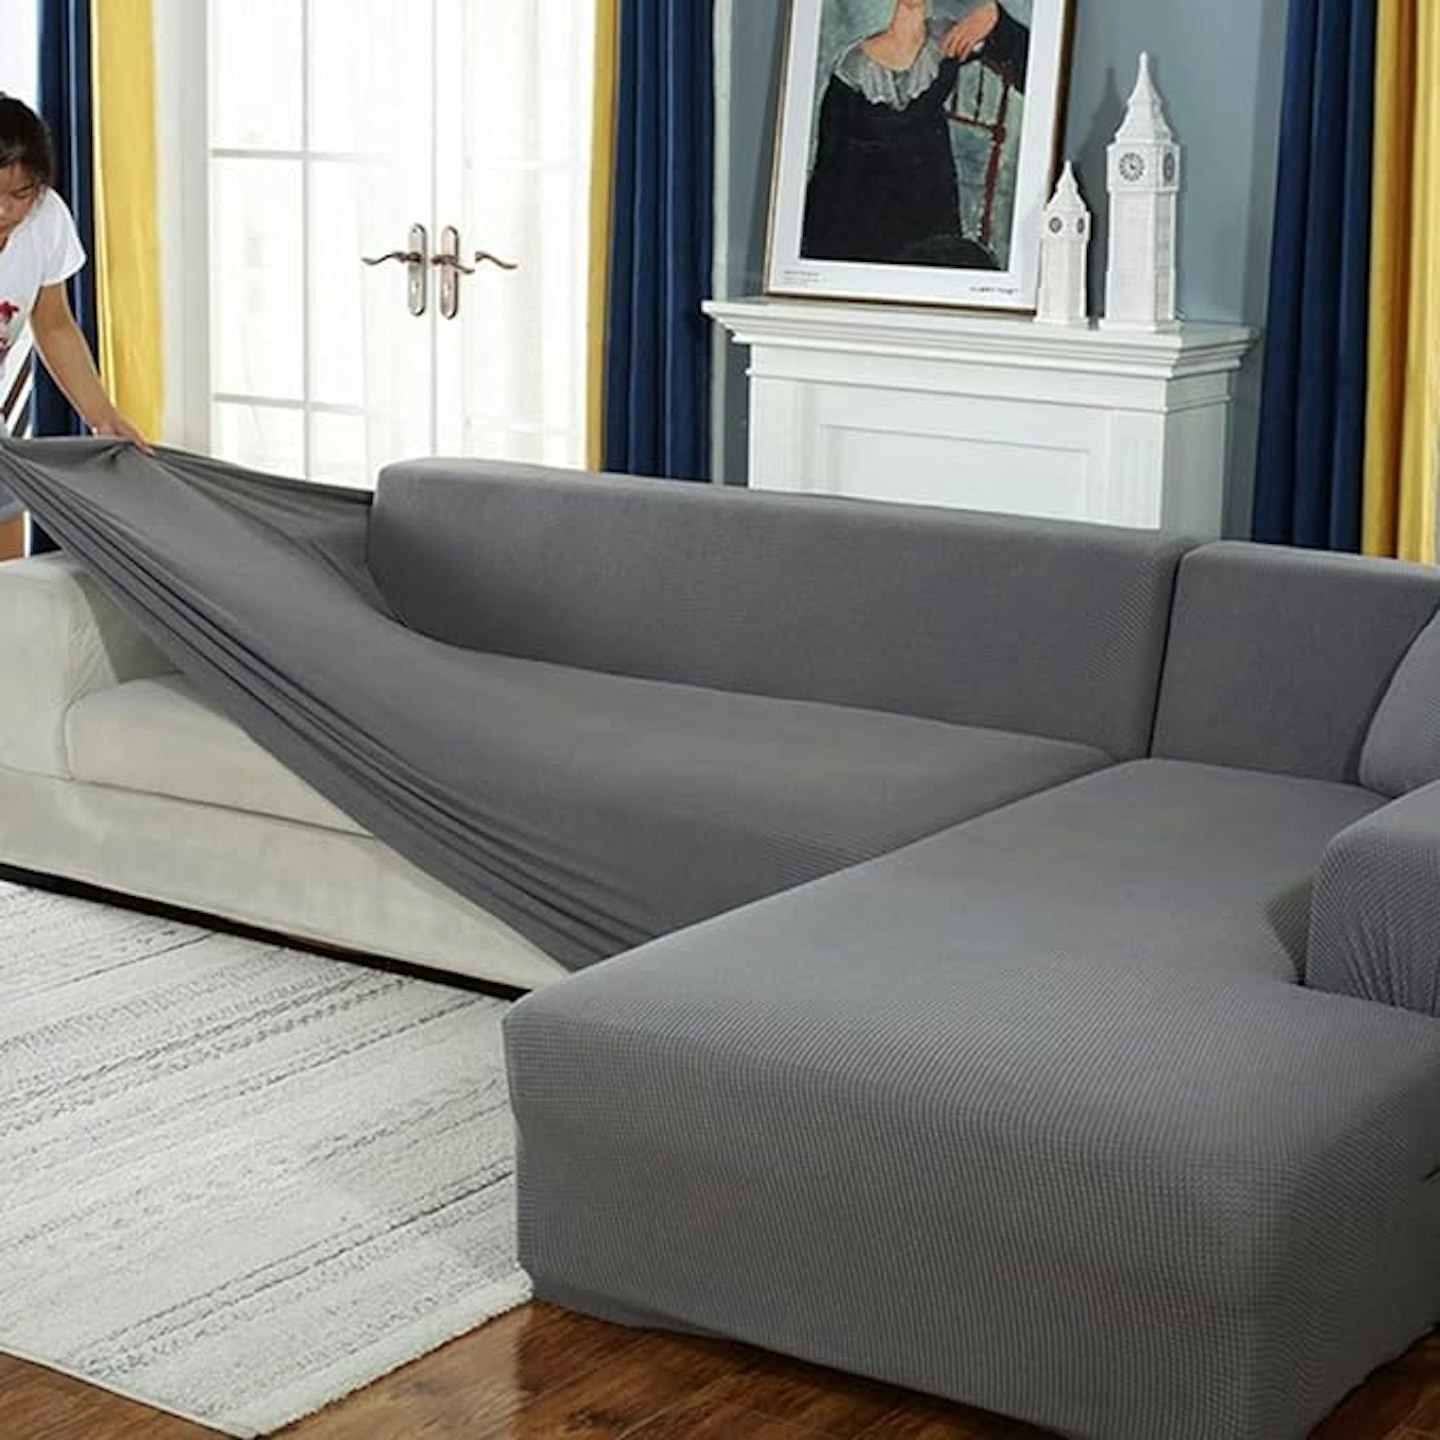 BOLUXIU - best sofa covers